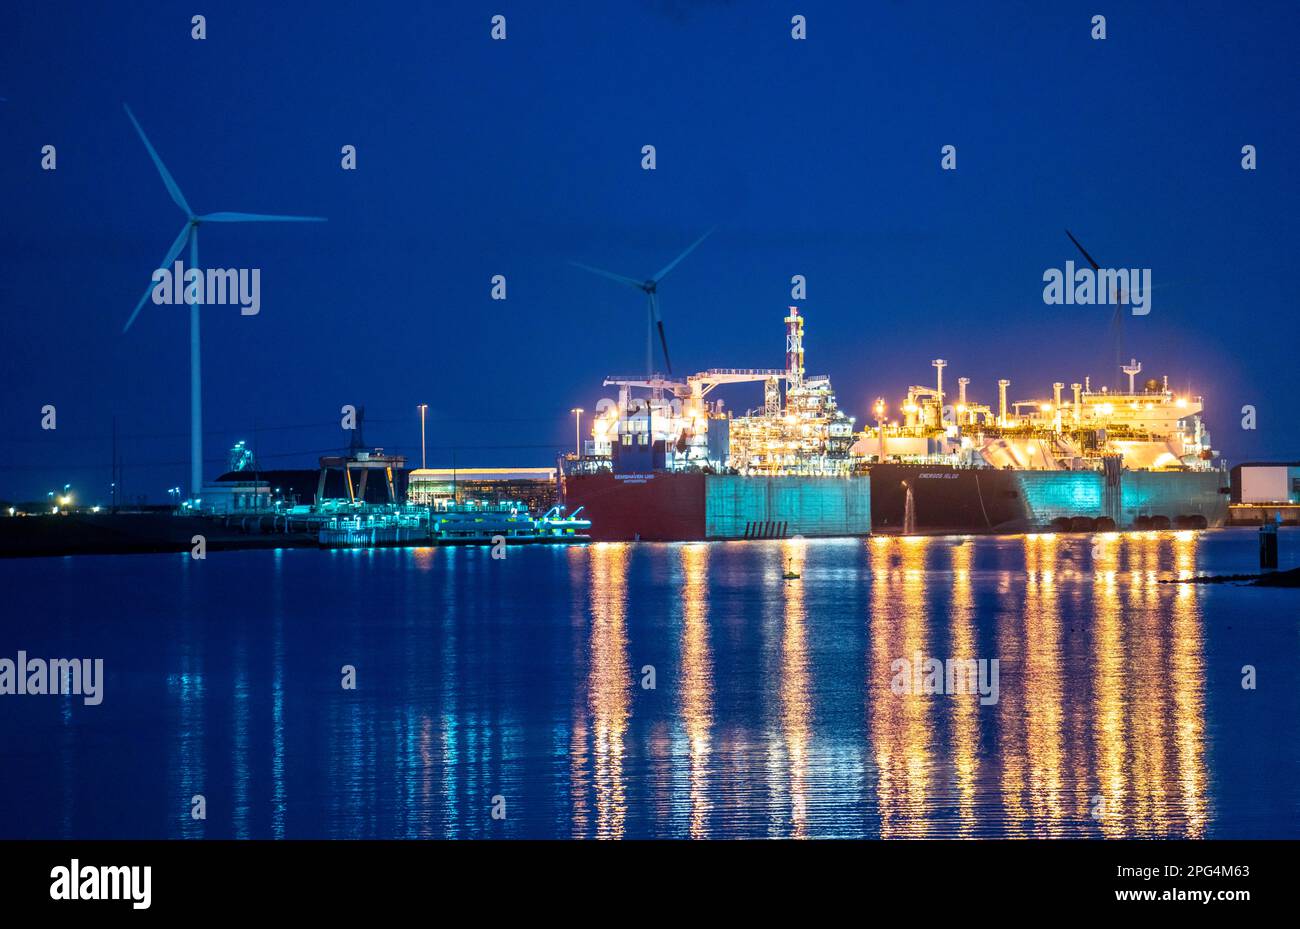 EemsEnergyTerminal, schwimmendes LNG-Terminal im Seehafen Eemshaven, transportieren Tanker Flüssigerdgas zu den beiden Produktionsschiffen, Eemshaven LNG Stockfoto